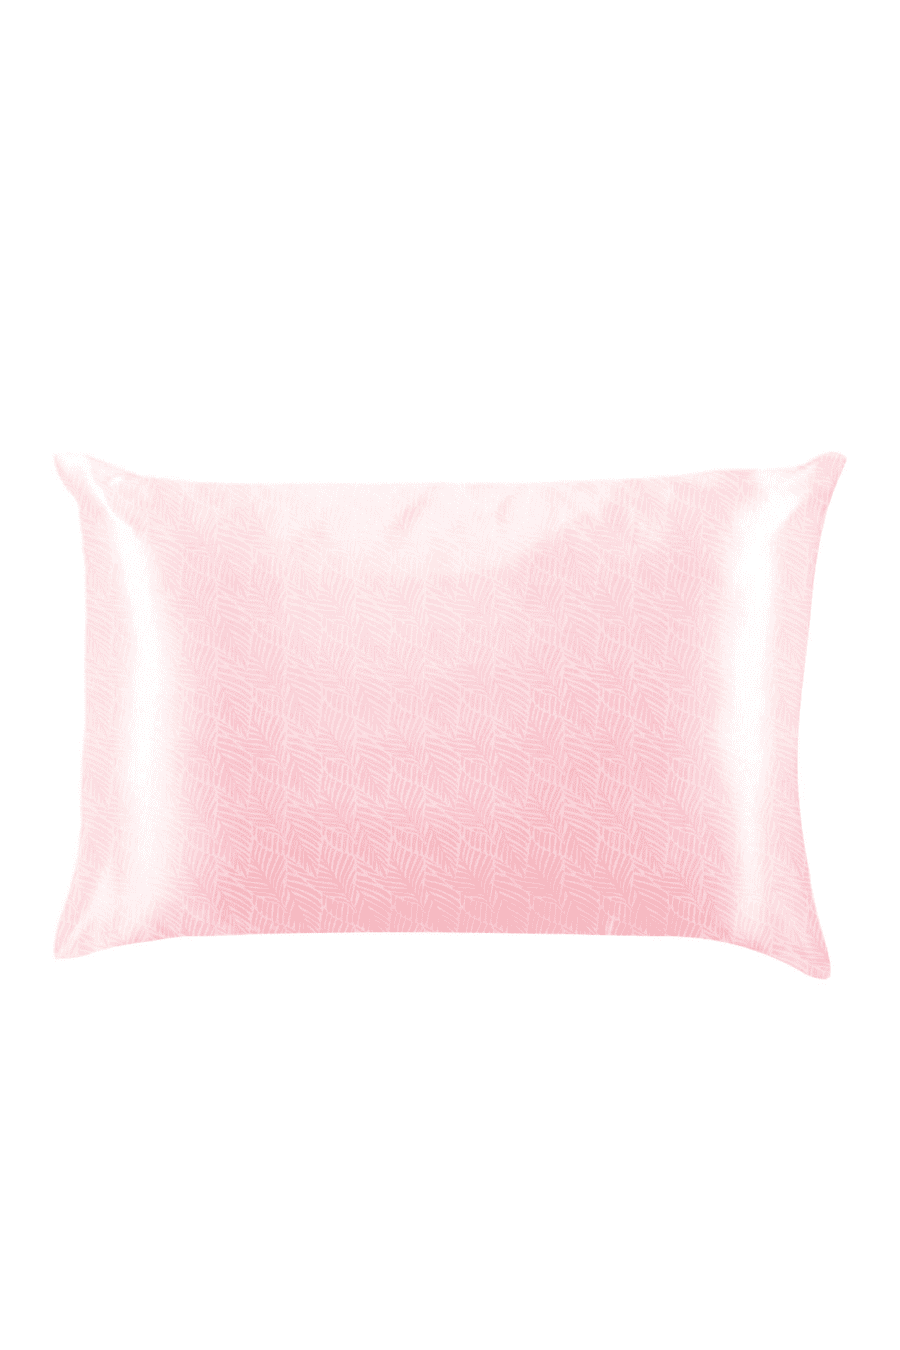 Silky Satin Pillowcase